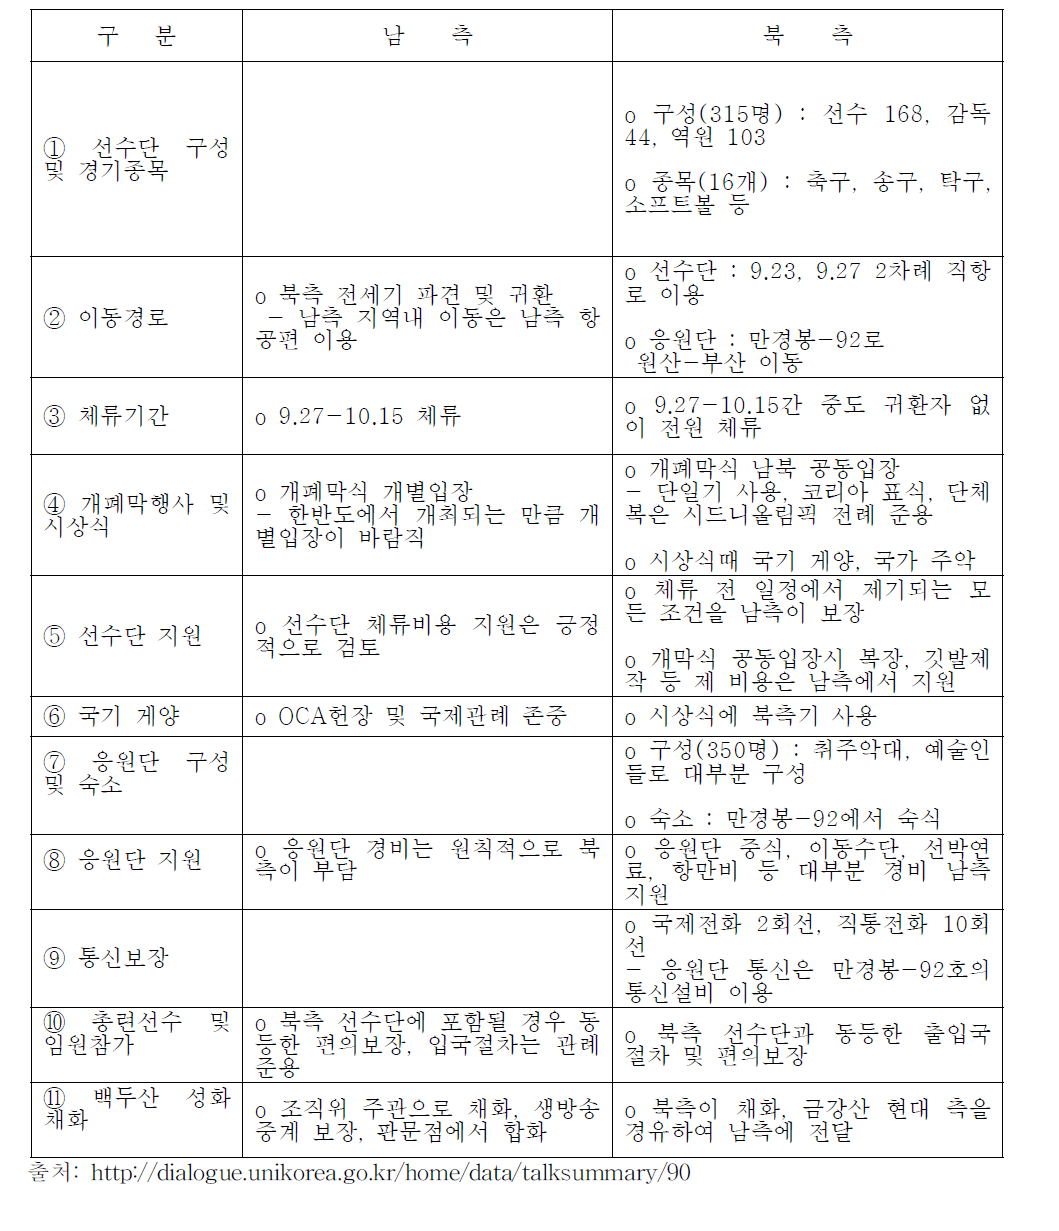 양측의 입장 대비표:2002 부산아시안게임과 관련 남북회담